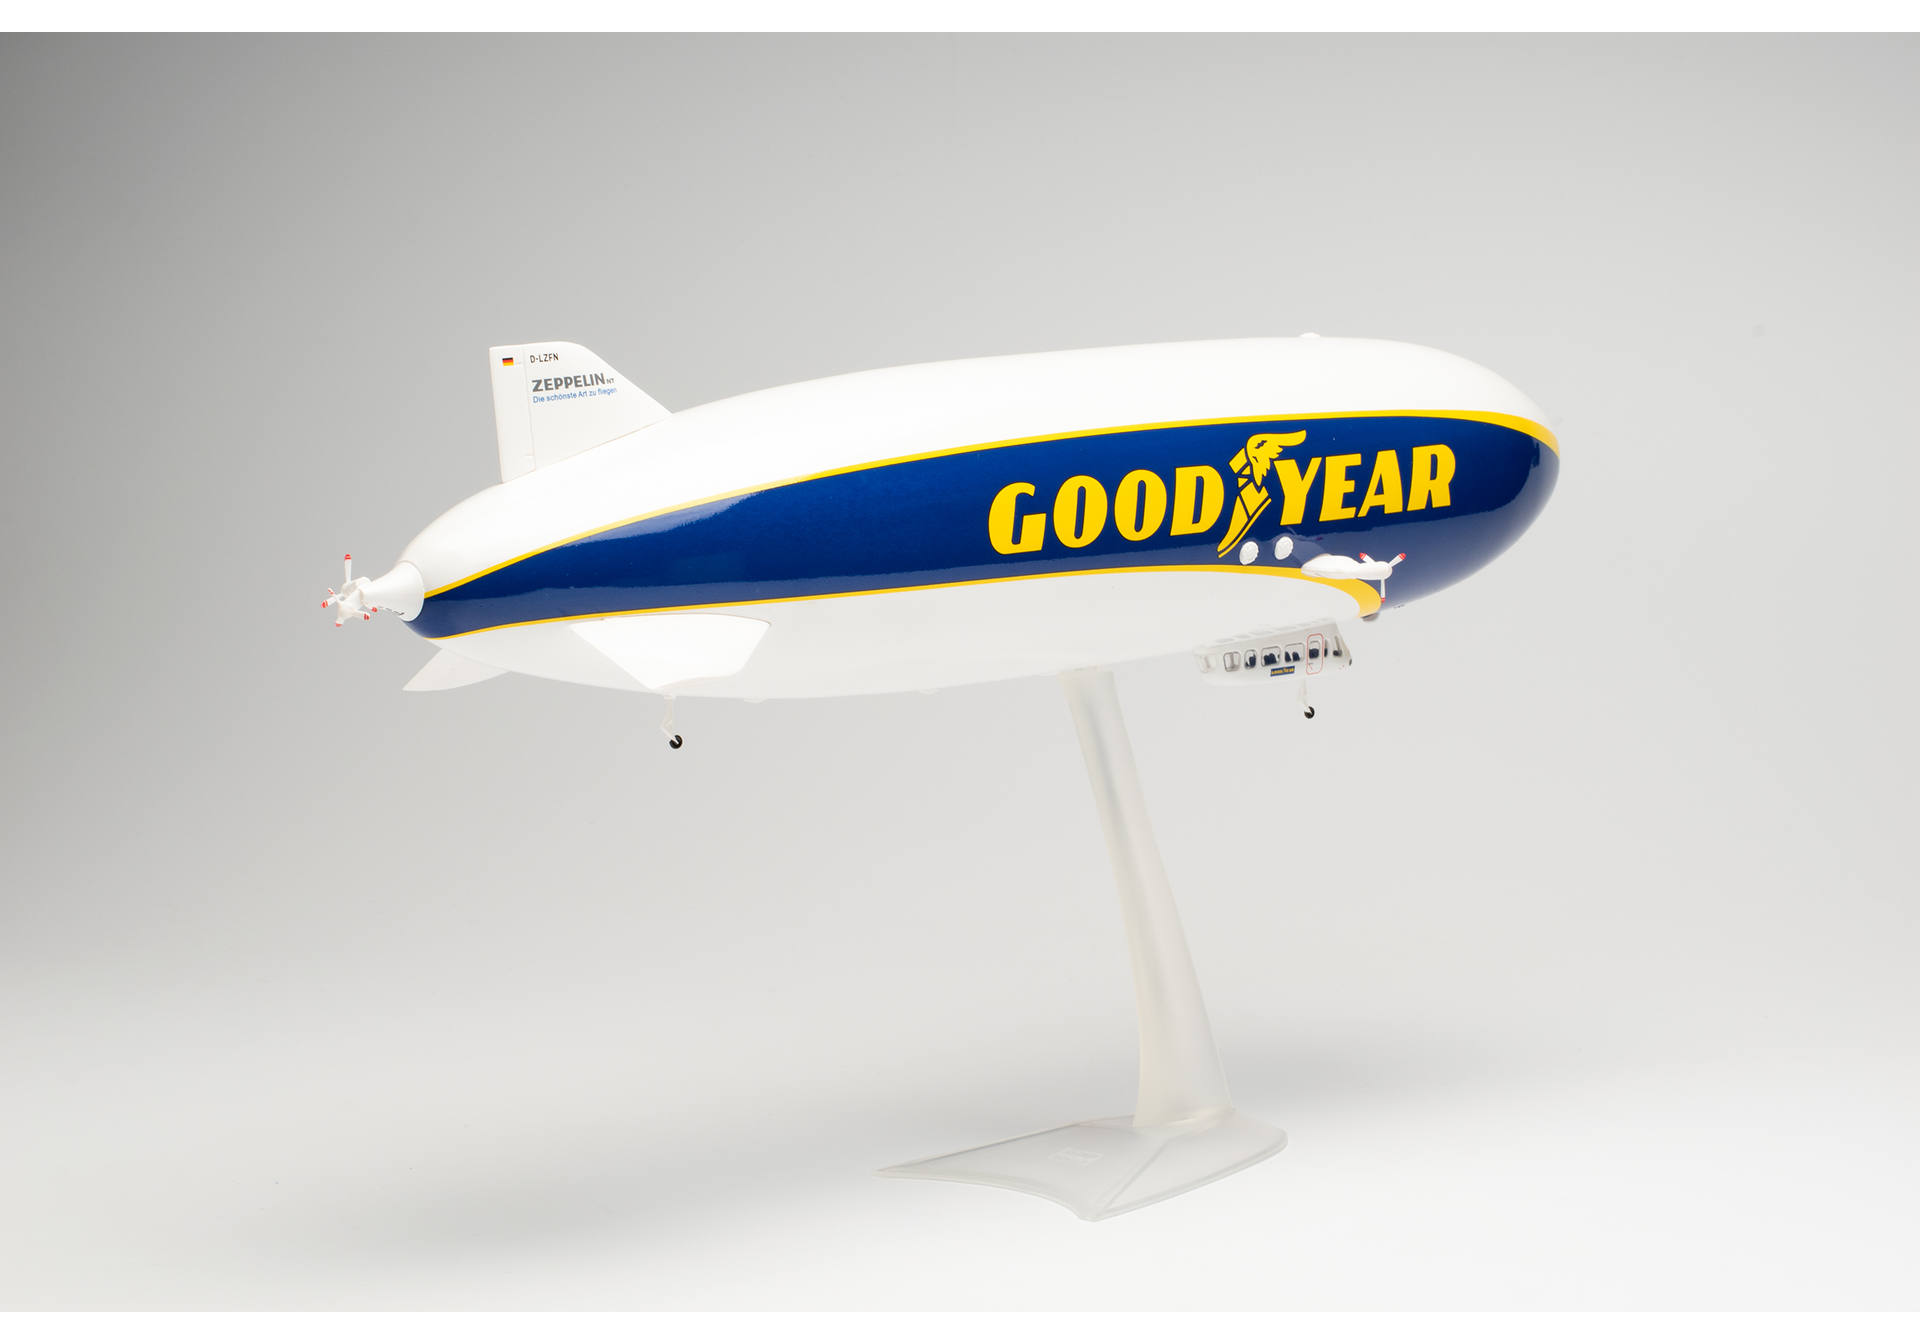 Goodyear Zeppelin NT – D-LZFN